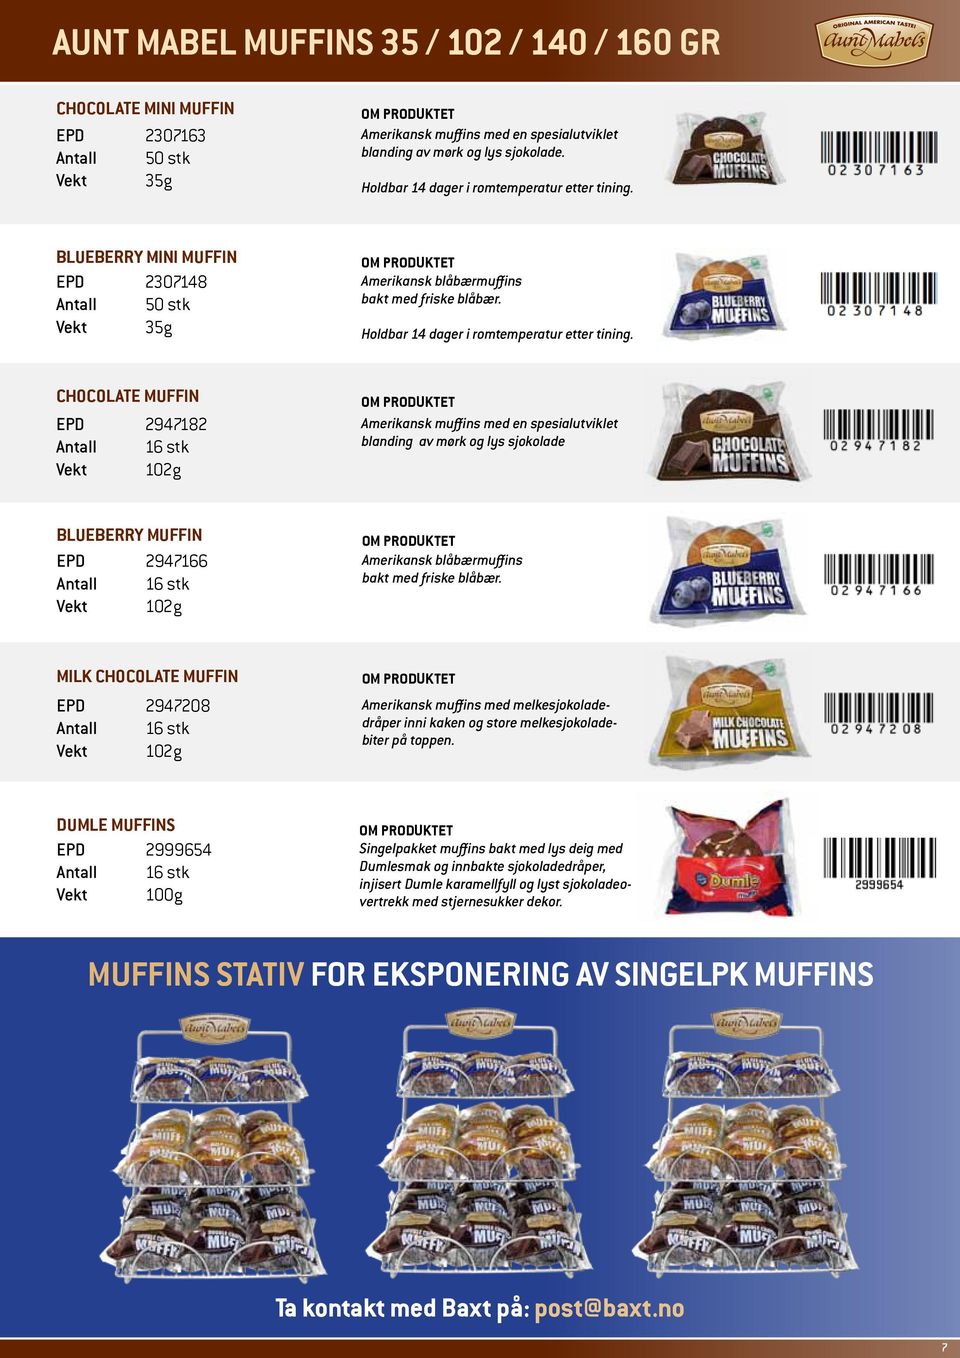 Chocolate Muffin EPD 2947182 Vekt 102g Amerikansk muffins med en spesialutviklet blanding av mørk og lys sjokolade Blueberry Muffin EPD 2947166 Vekt 102g Amerikansk blåbærmuffins bakt med friske